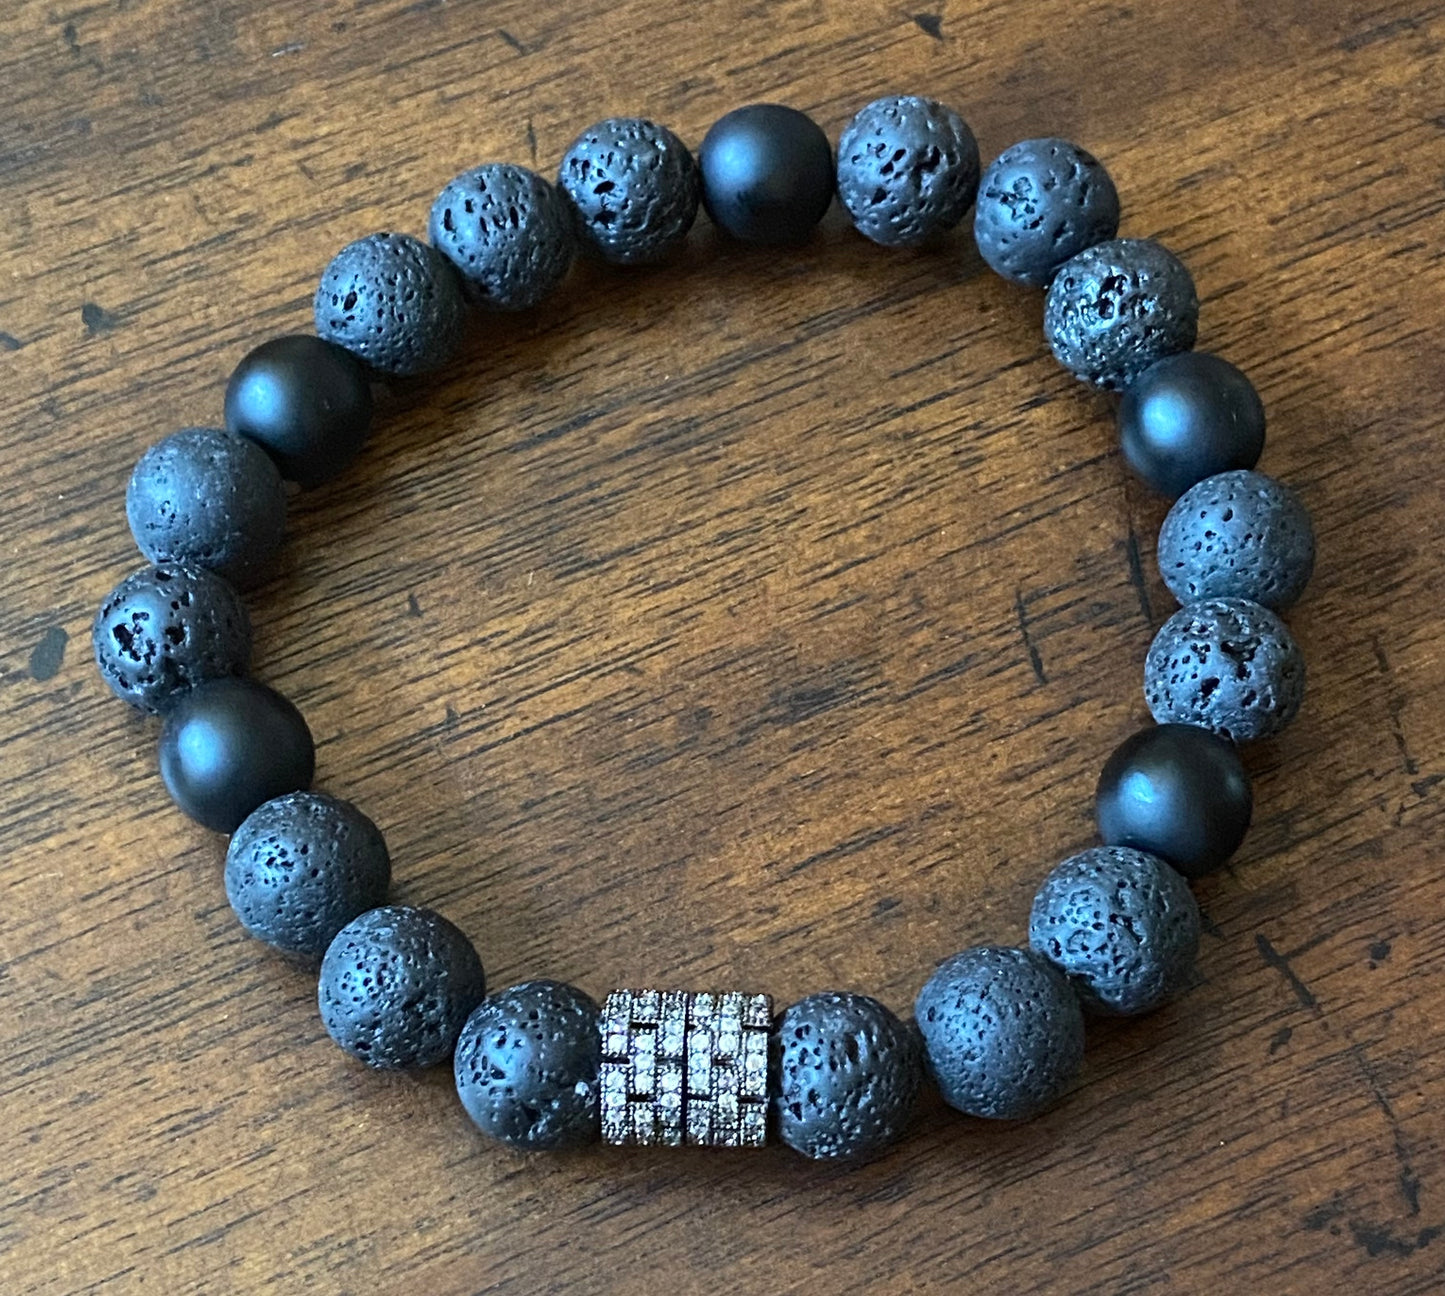 Men's Onyx/Lava Rock Bracelet with Accent Bead